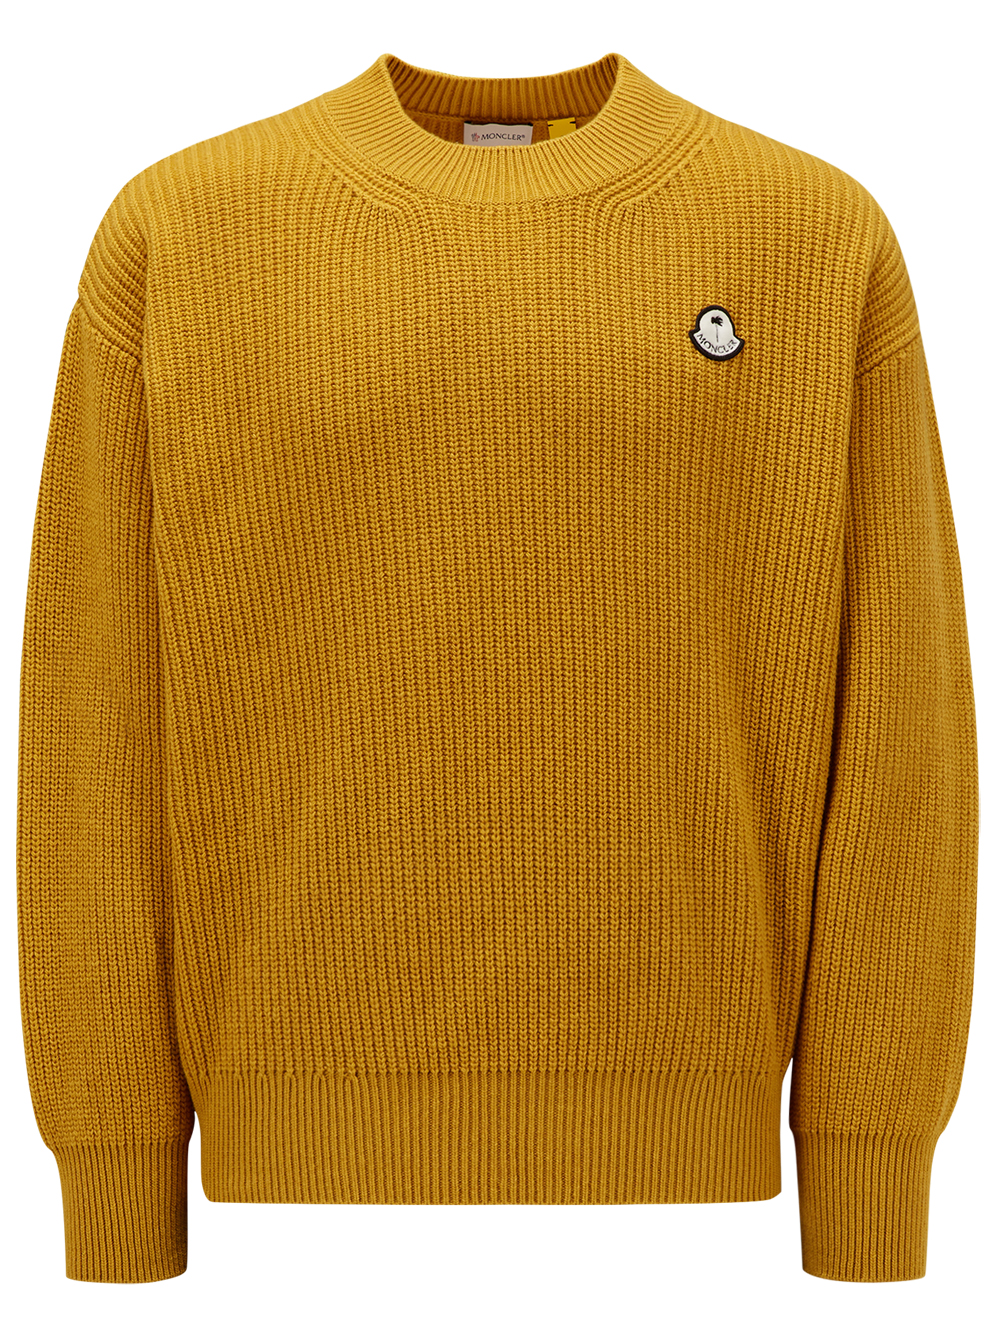 Moncler Genius MONCLER GENIUS- Wool Sweater